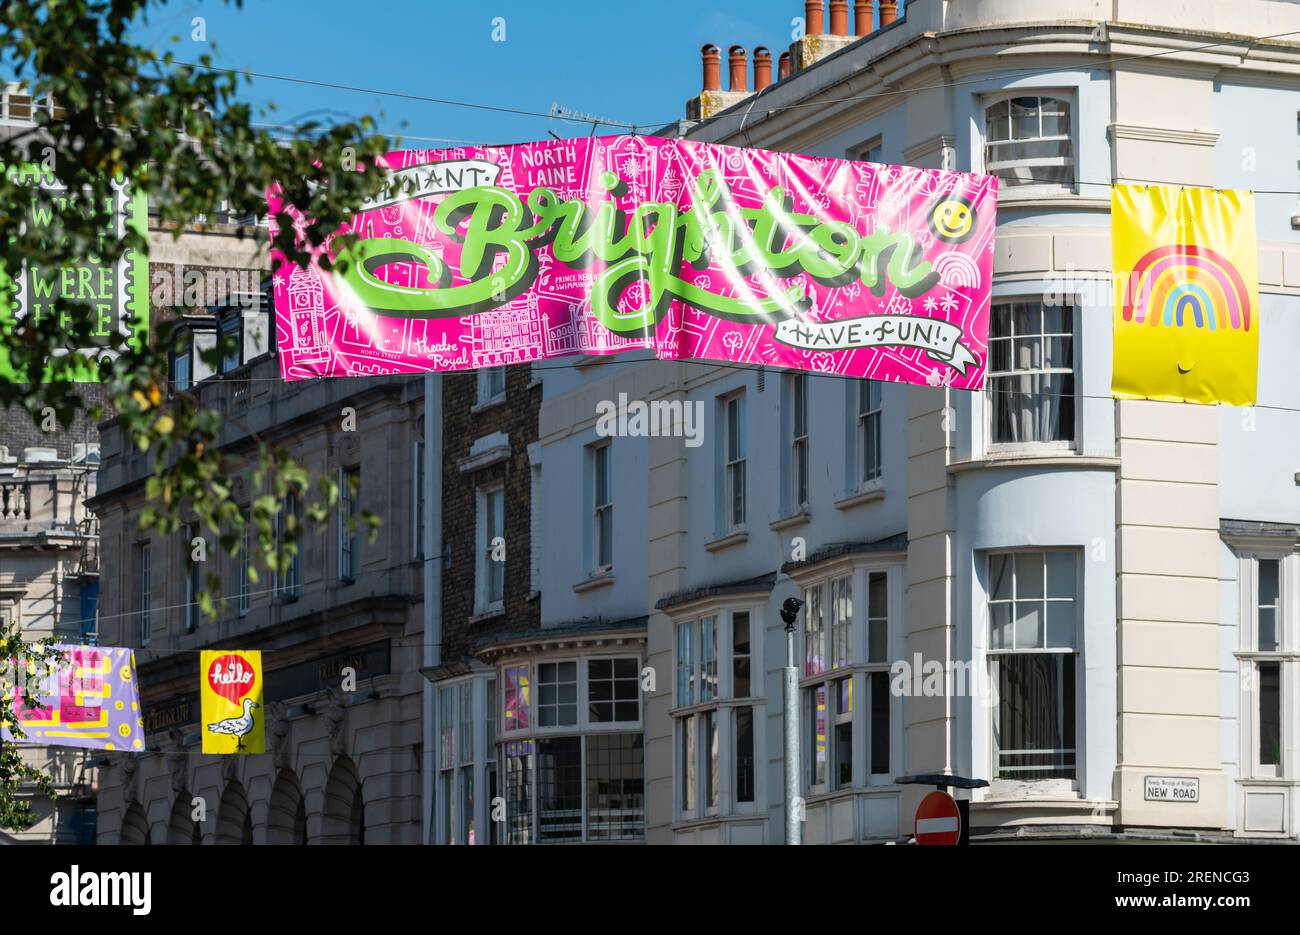 Farbenfrohes Brighton-Banner, das im Sommer über die North Street im Stadtzentrum von Brighton in der Stadt Brighton & Hove, East Sussex, England, Großbritannien, hängt. Stockfoto